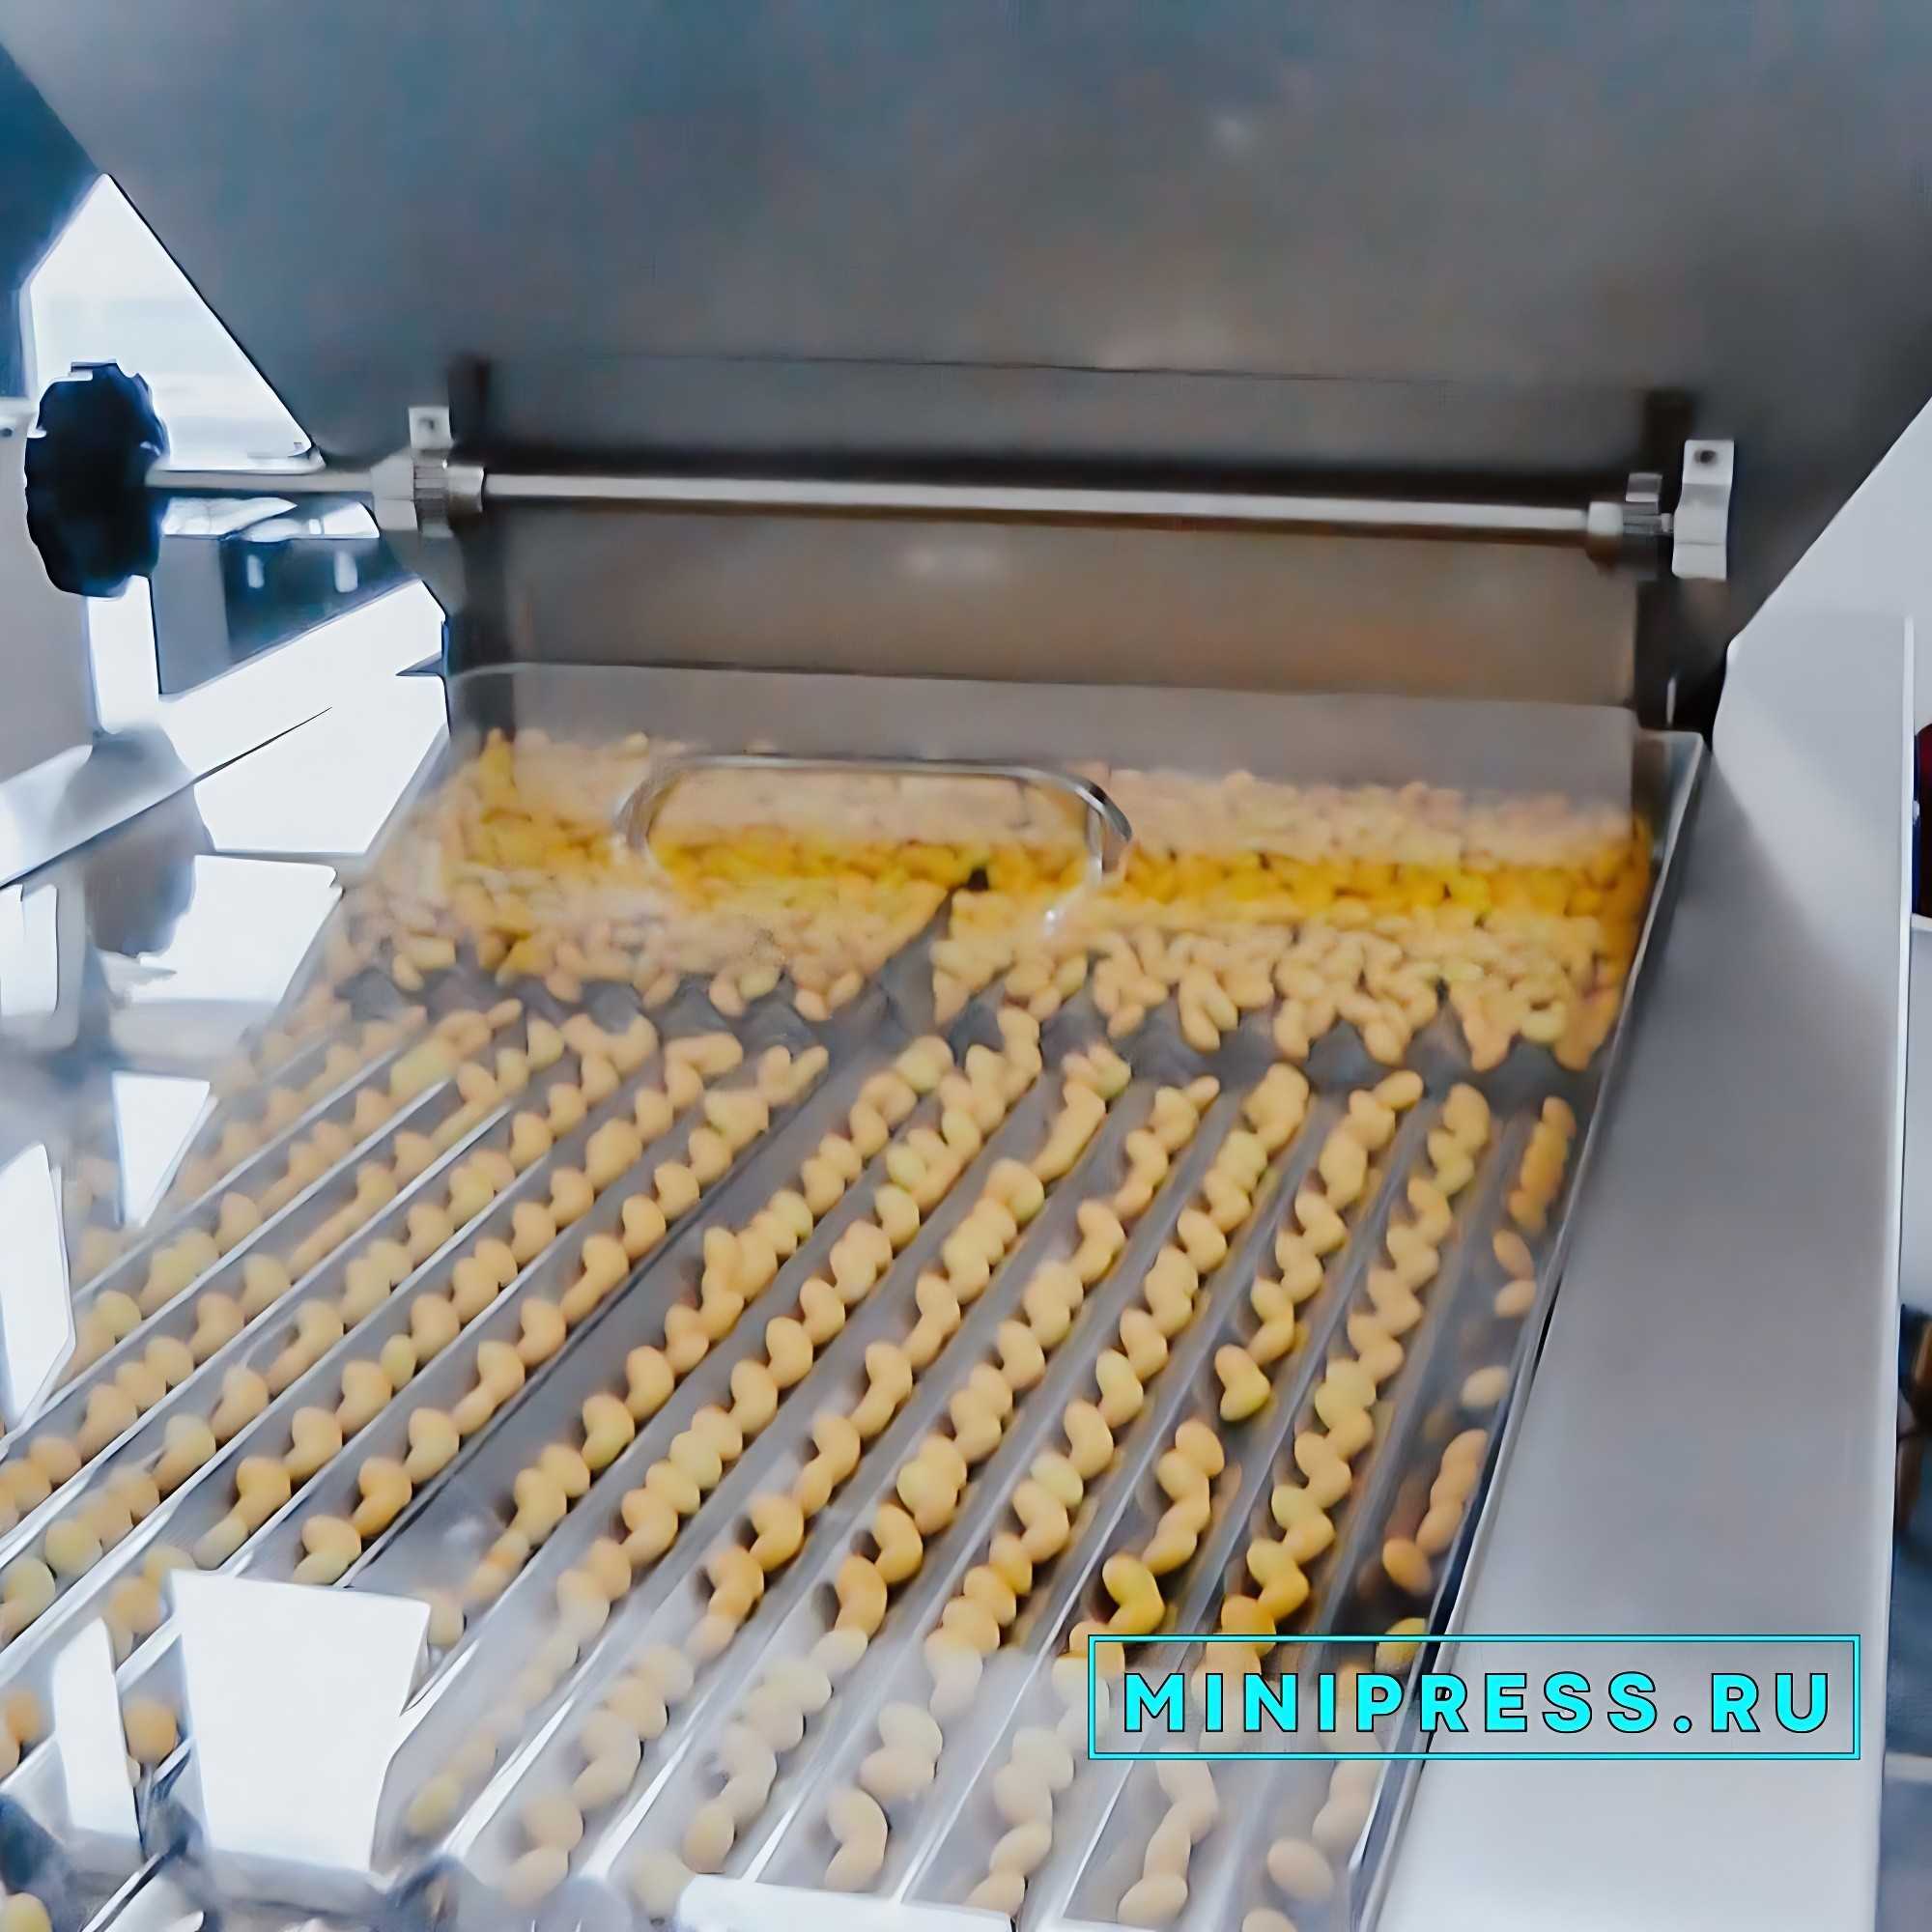 Equipo automático para dispensar cremas y ungüentos en la producción farmacéutica